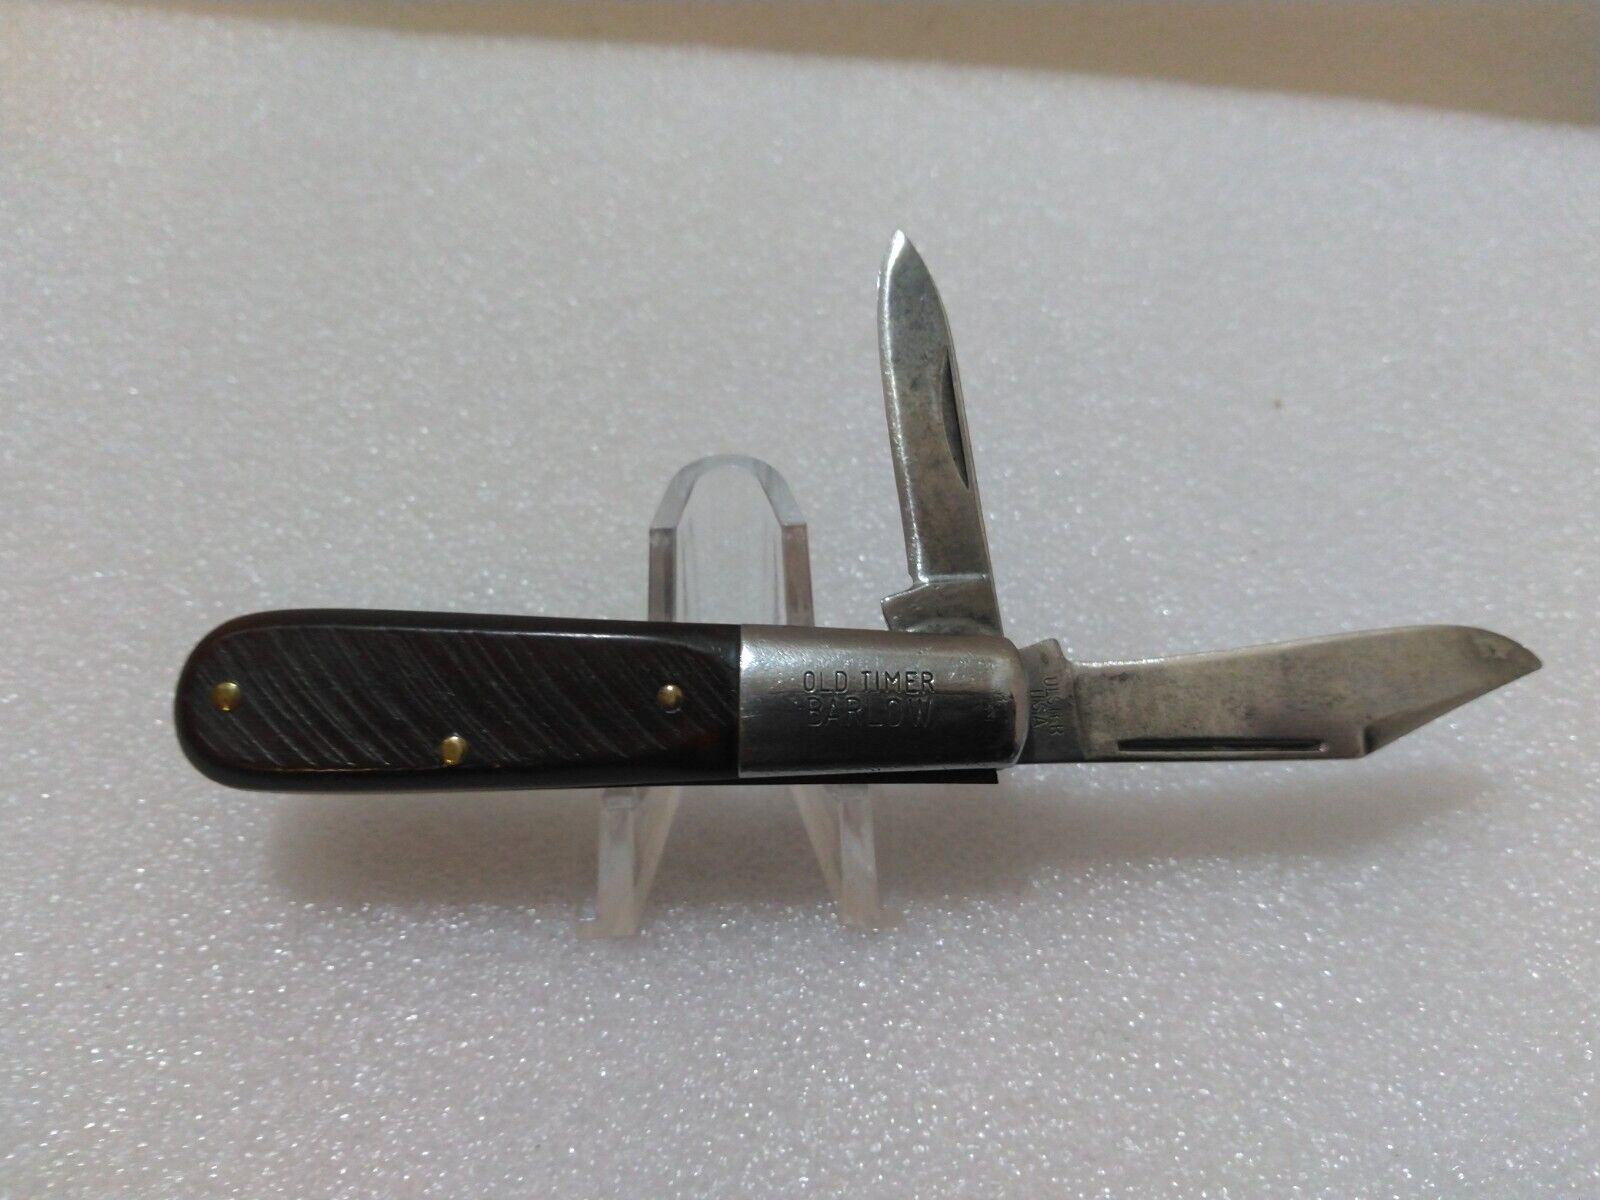 Vintage Ulster USA 10OT Old Timer BARLOW 2 Blade pocket knife